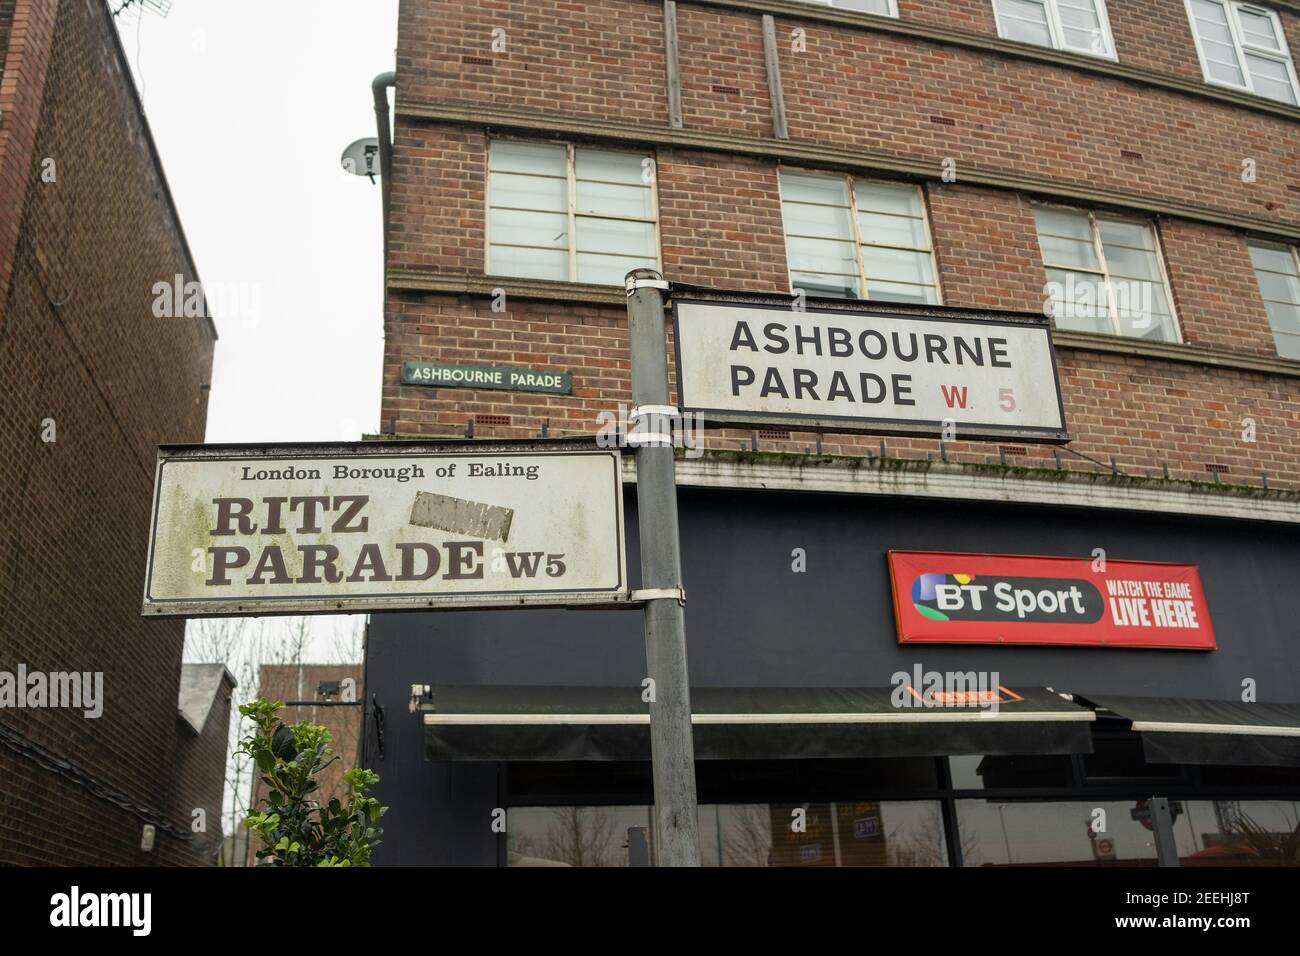 Londres- Ashbourne Parade et le panneau Ritz Parade, un quartier de boutiques près de la station de métro Hanger Lane Banque D'Images